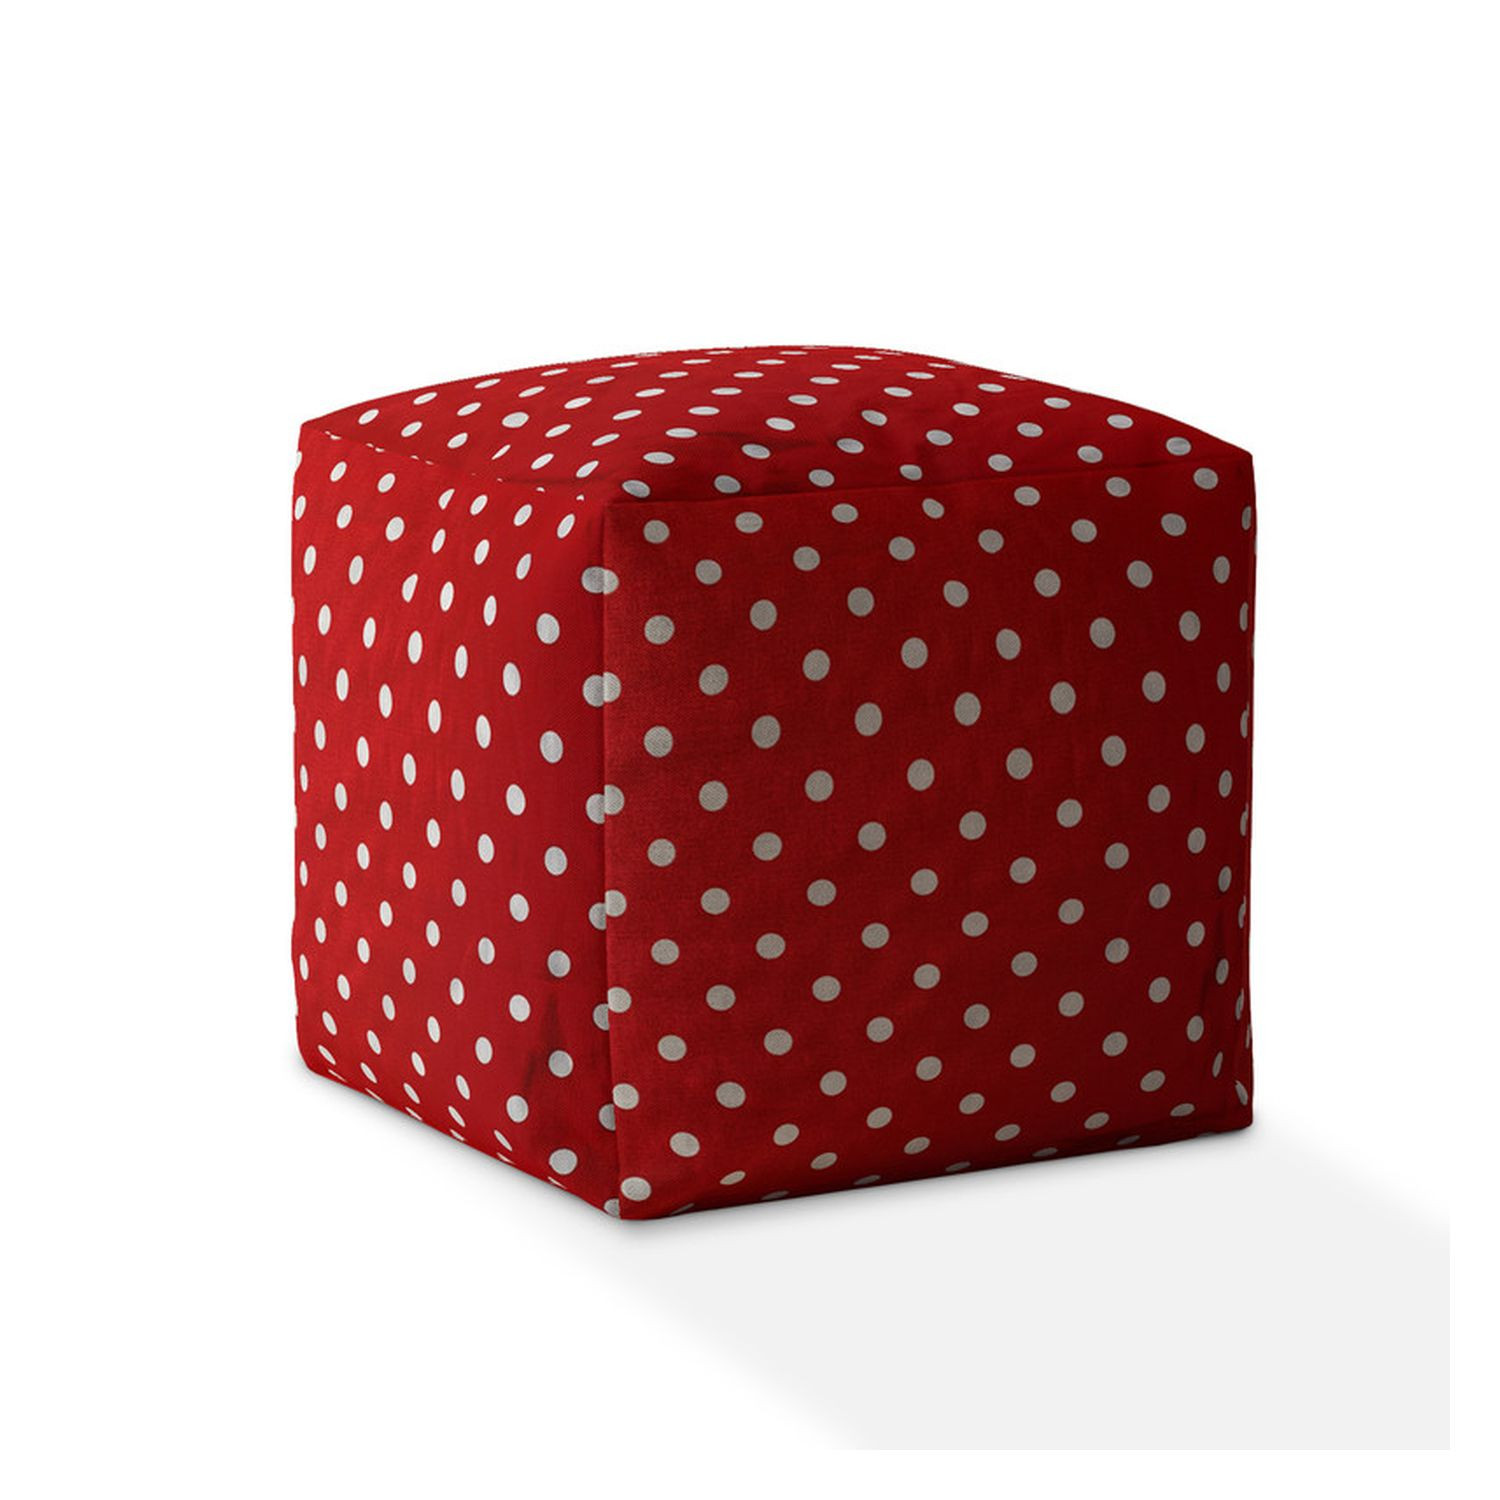 17" Red Cotton Polka Dots Pouf Ottoman-518341-1